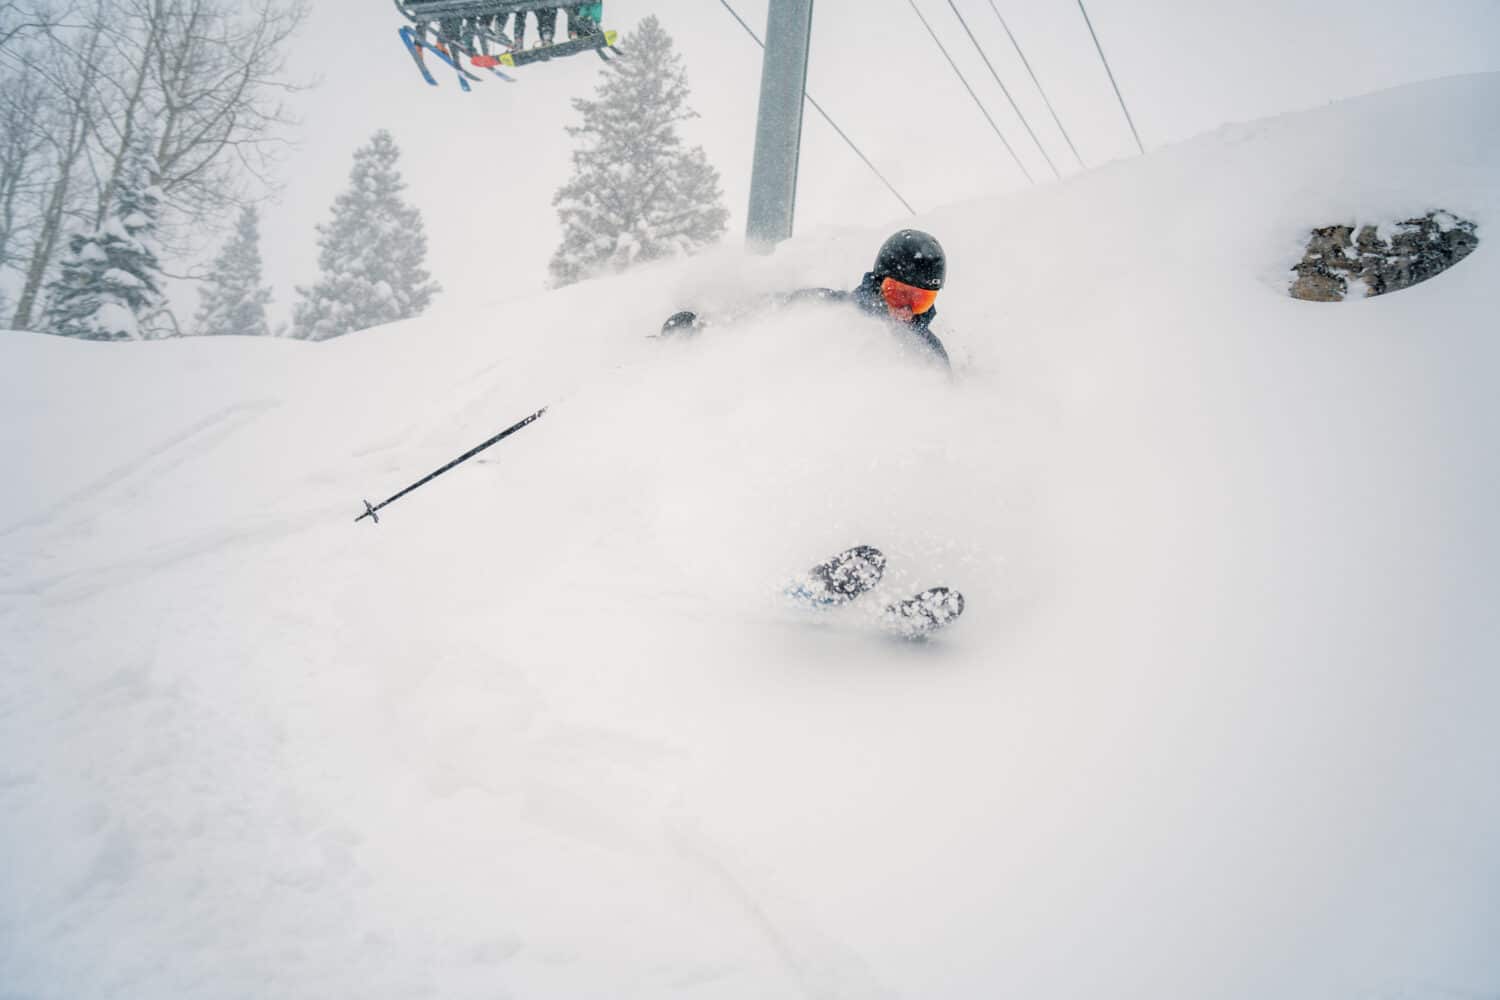 Skier turning in deep powder